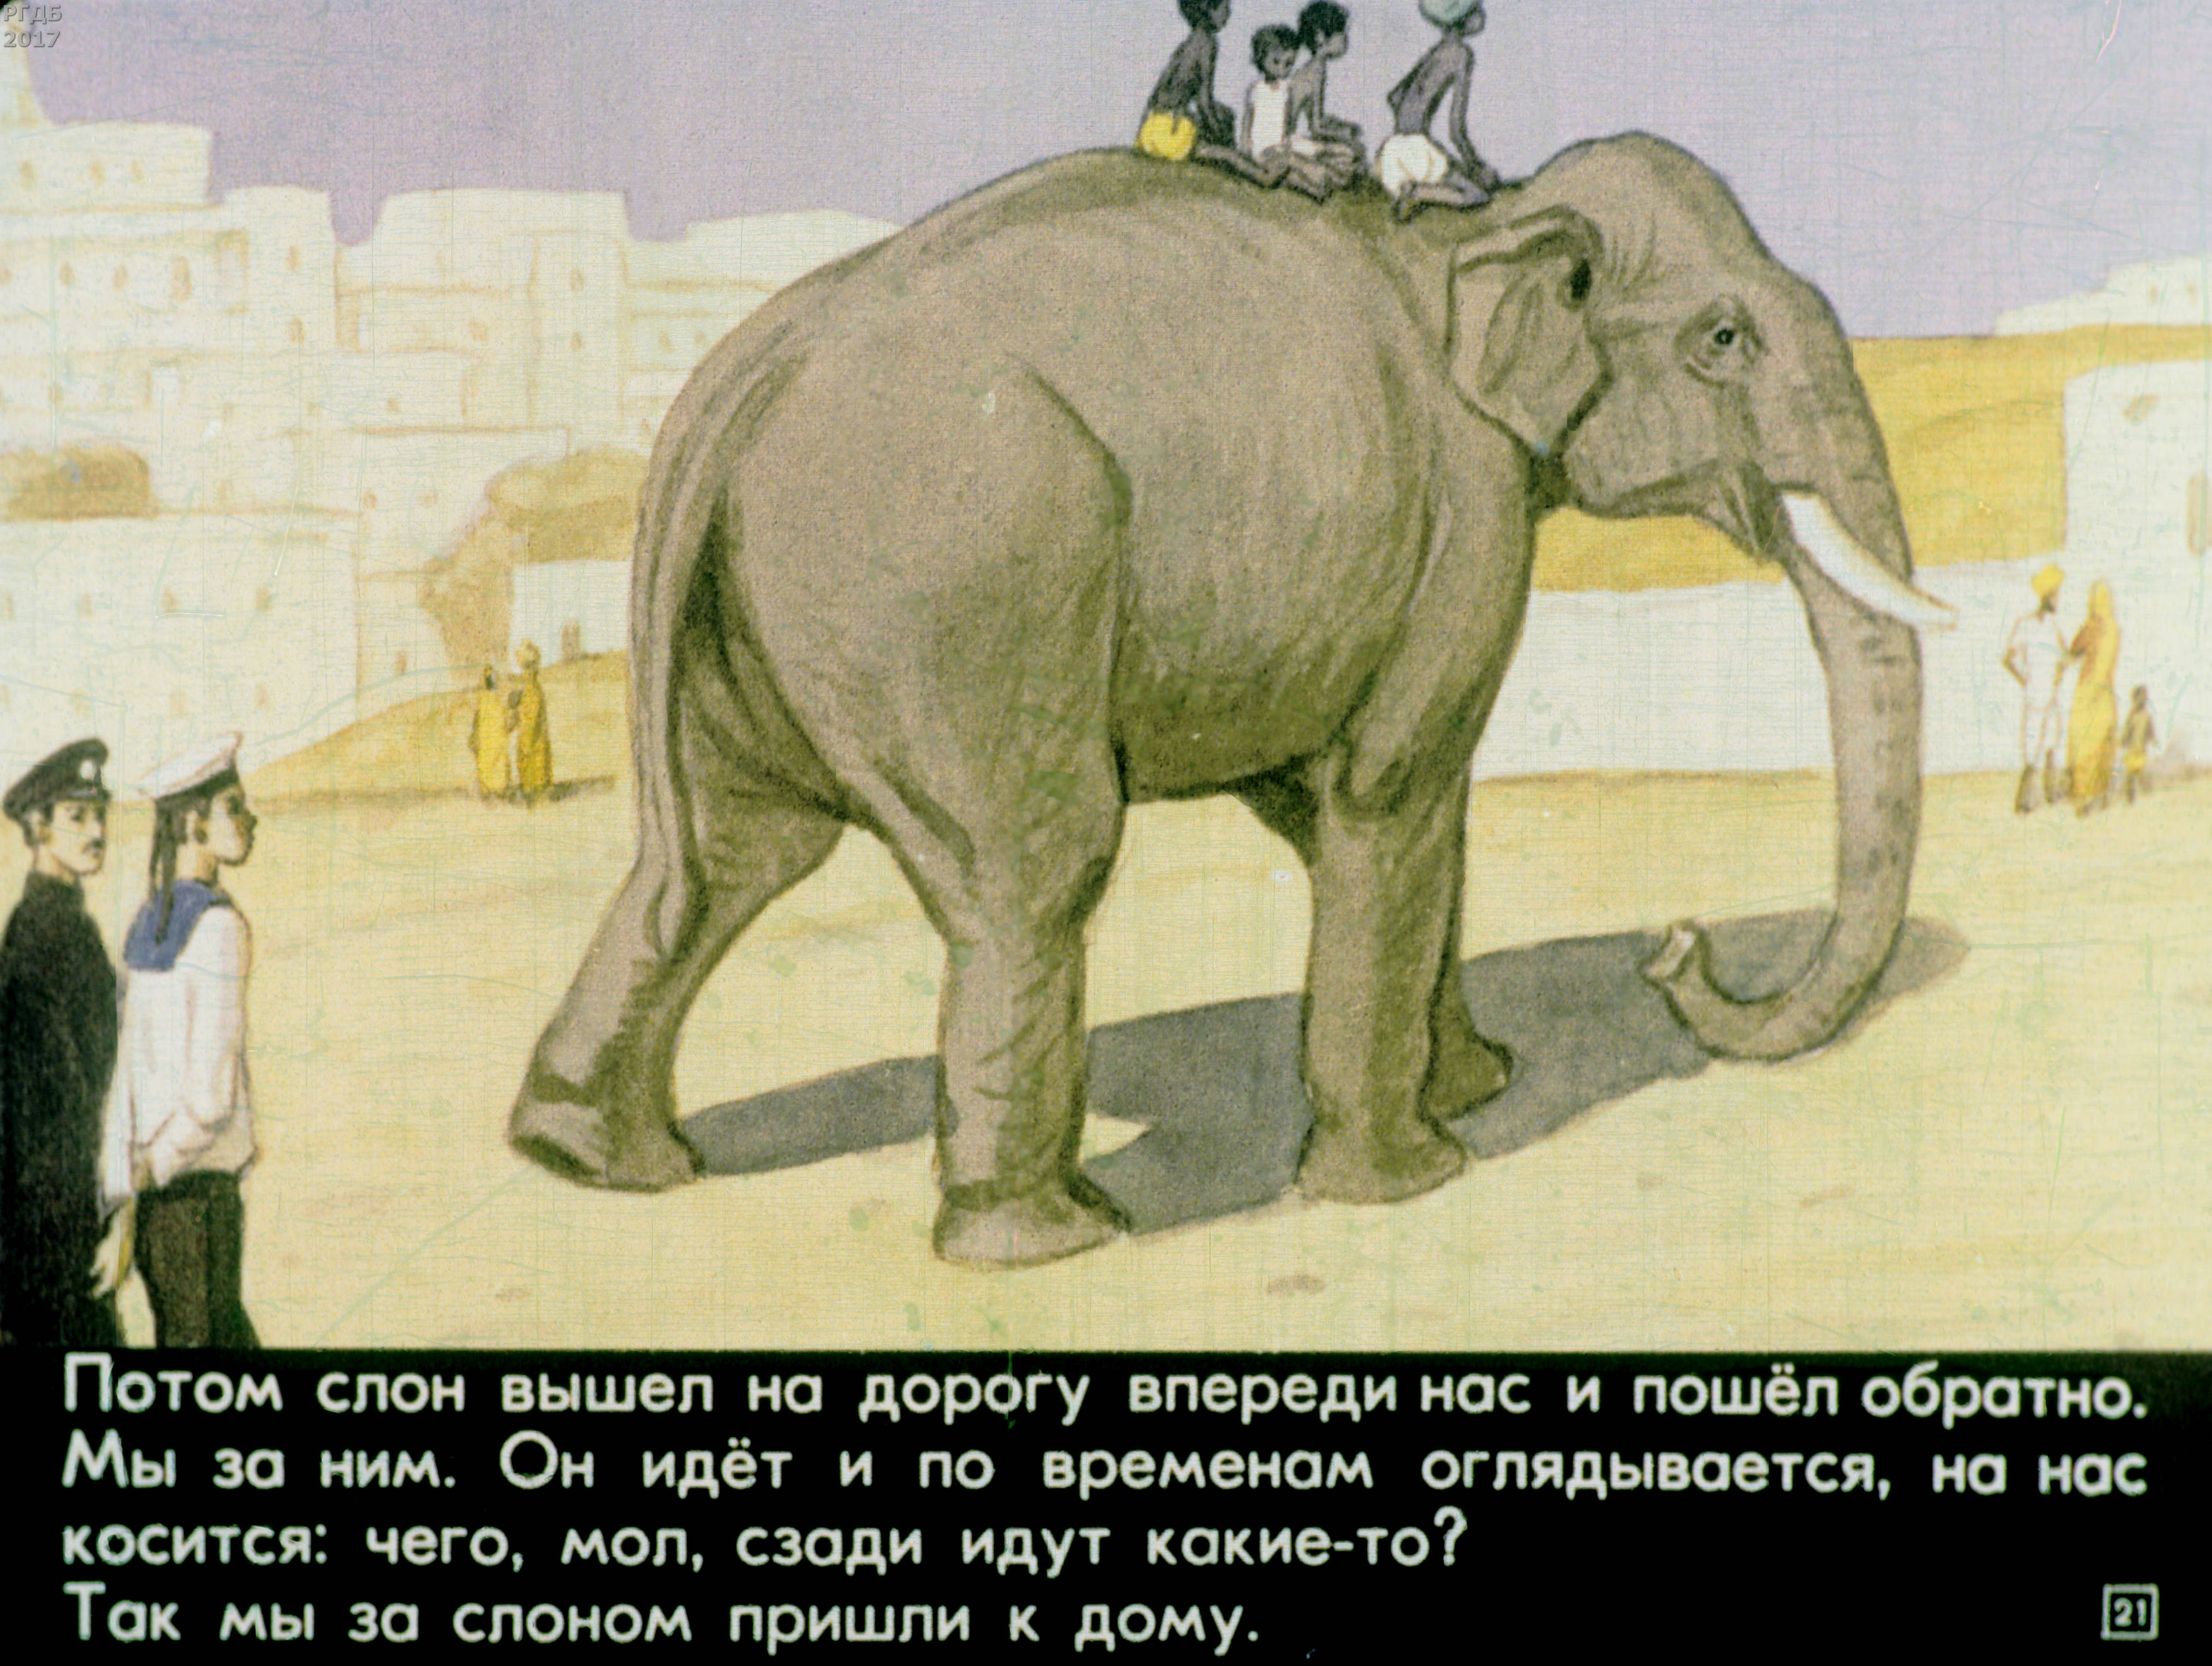 Читать про слона. Житков про слона. Рассказ Житкова про слона. Диафильм Житков про слона.